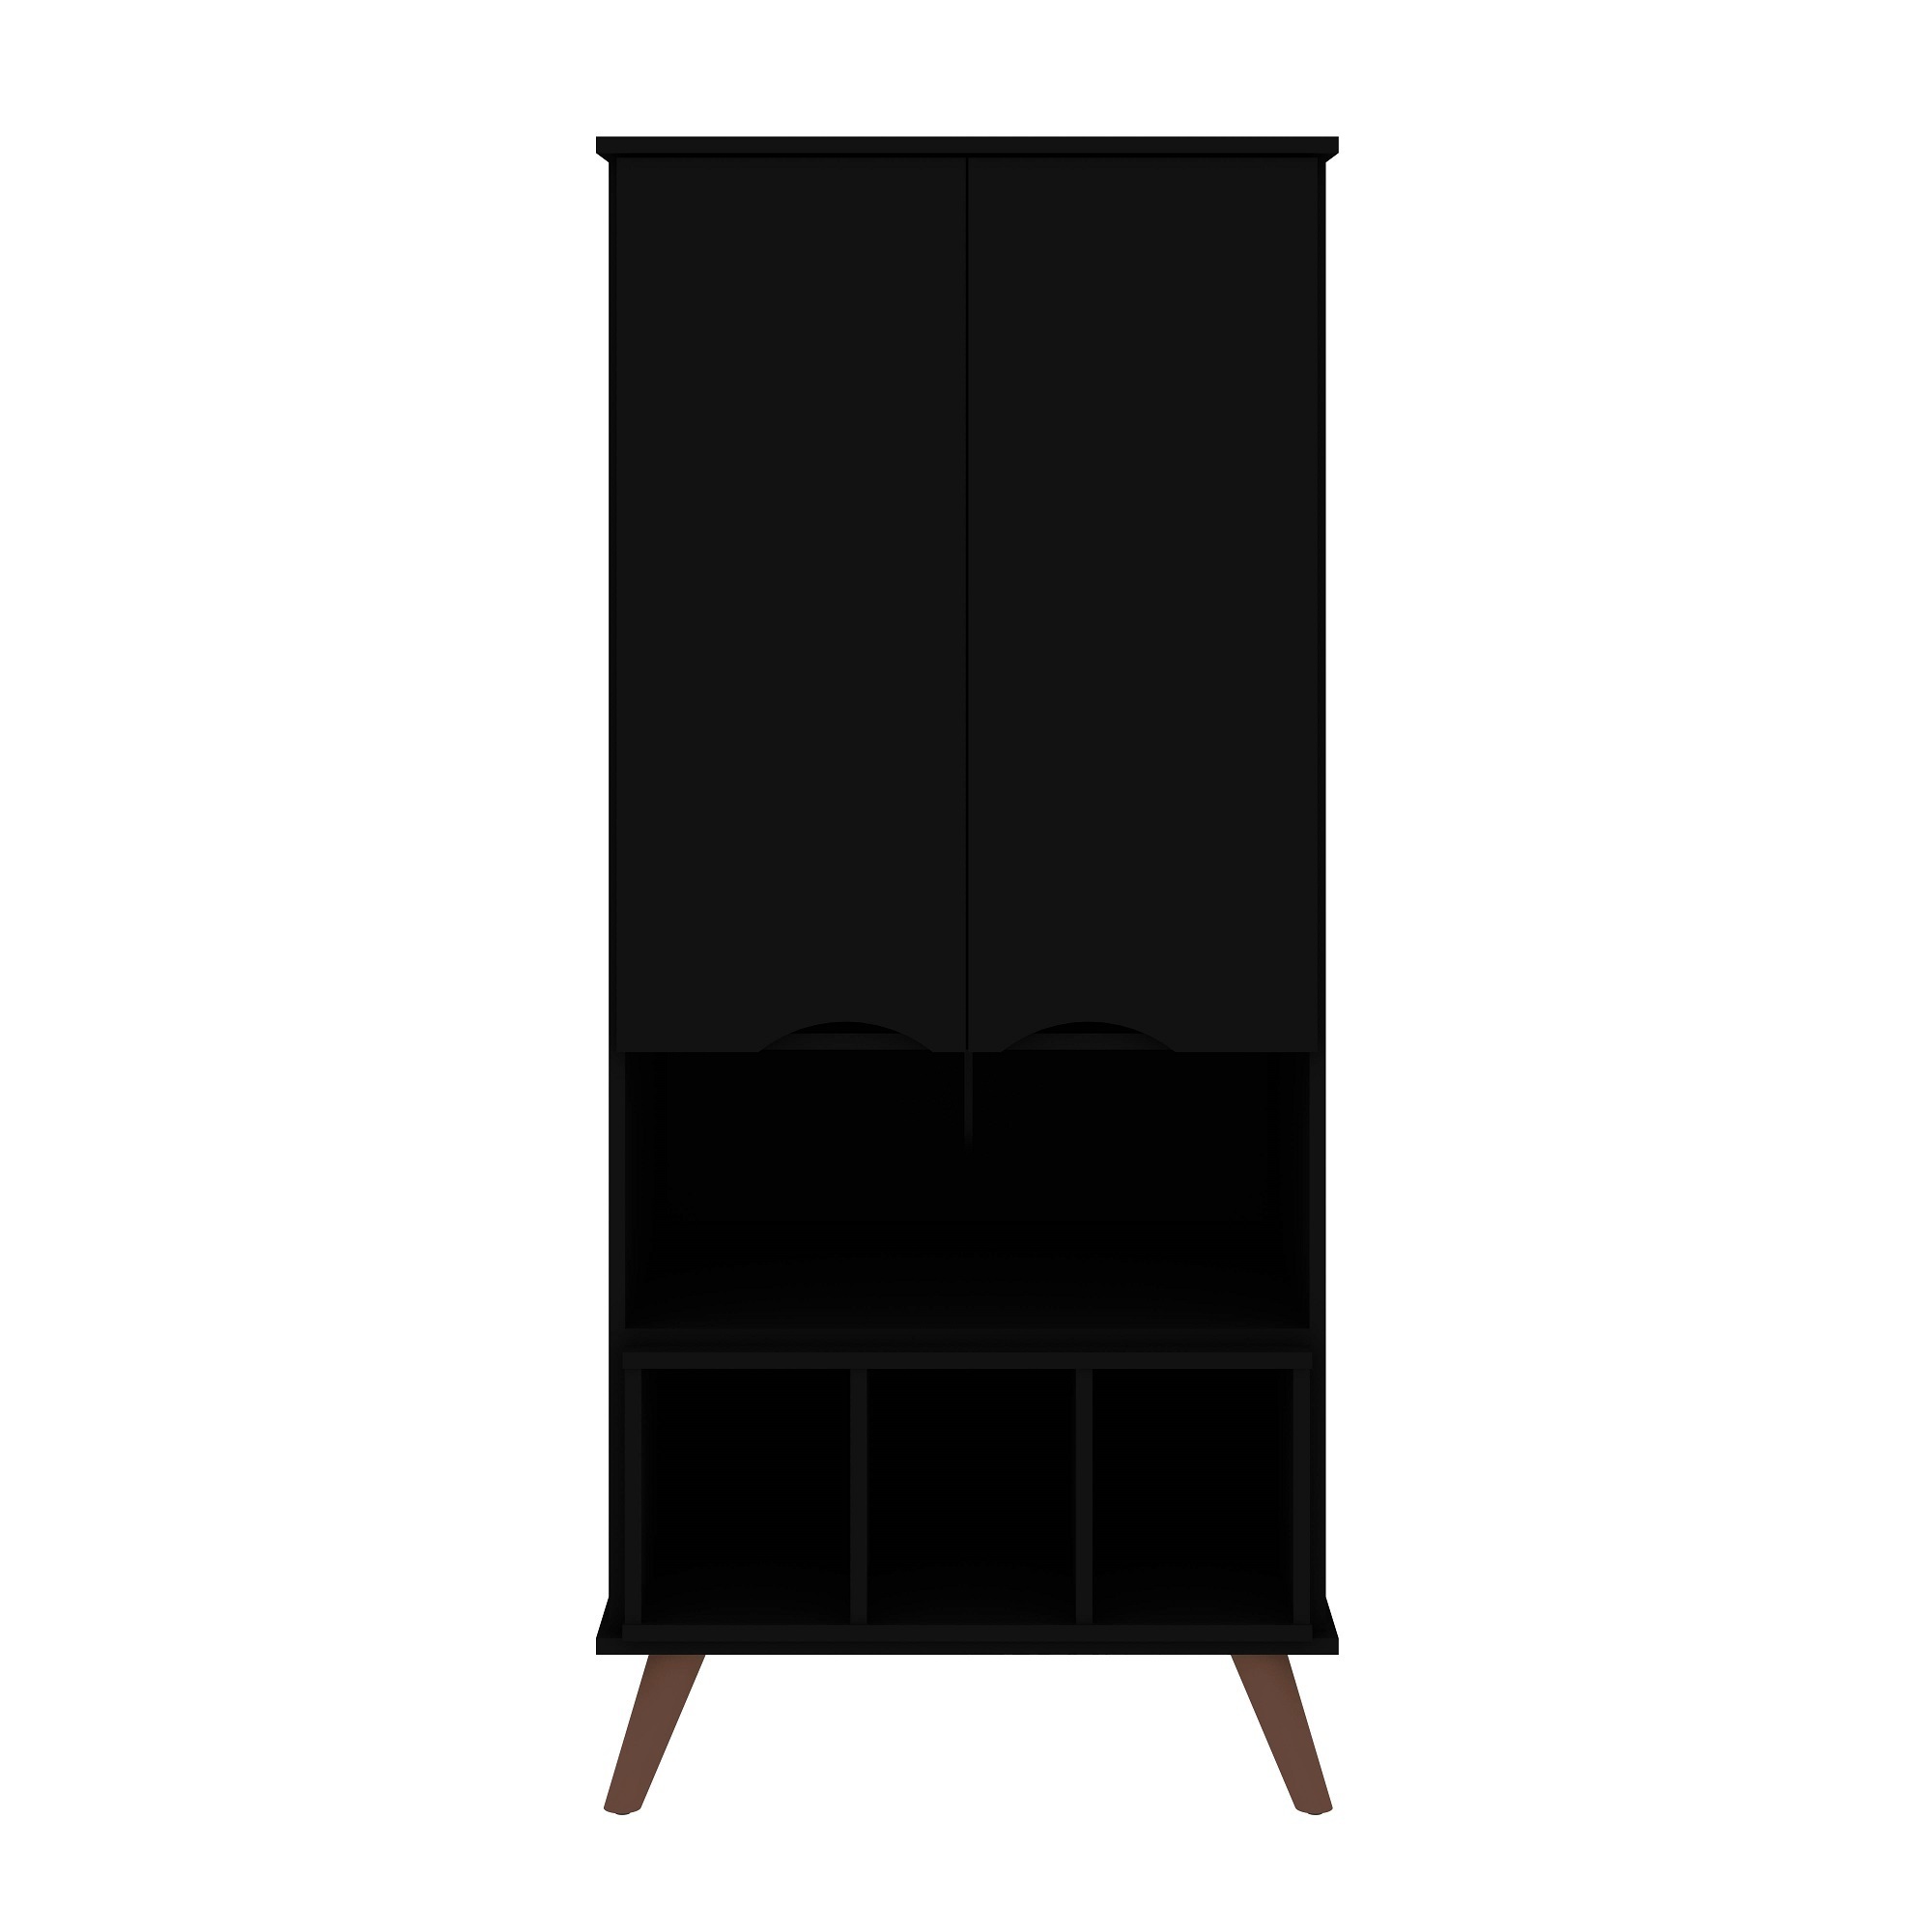 Manhattan Comfort, Hampton Cabinet 6 Shelves Wood Legs Black, Width 26.77 in, Height 60.7 in, Depth 21.26 in, Model 14PMC